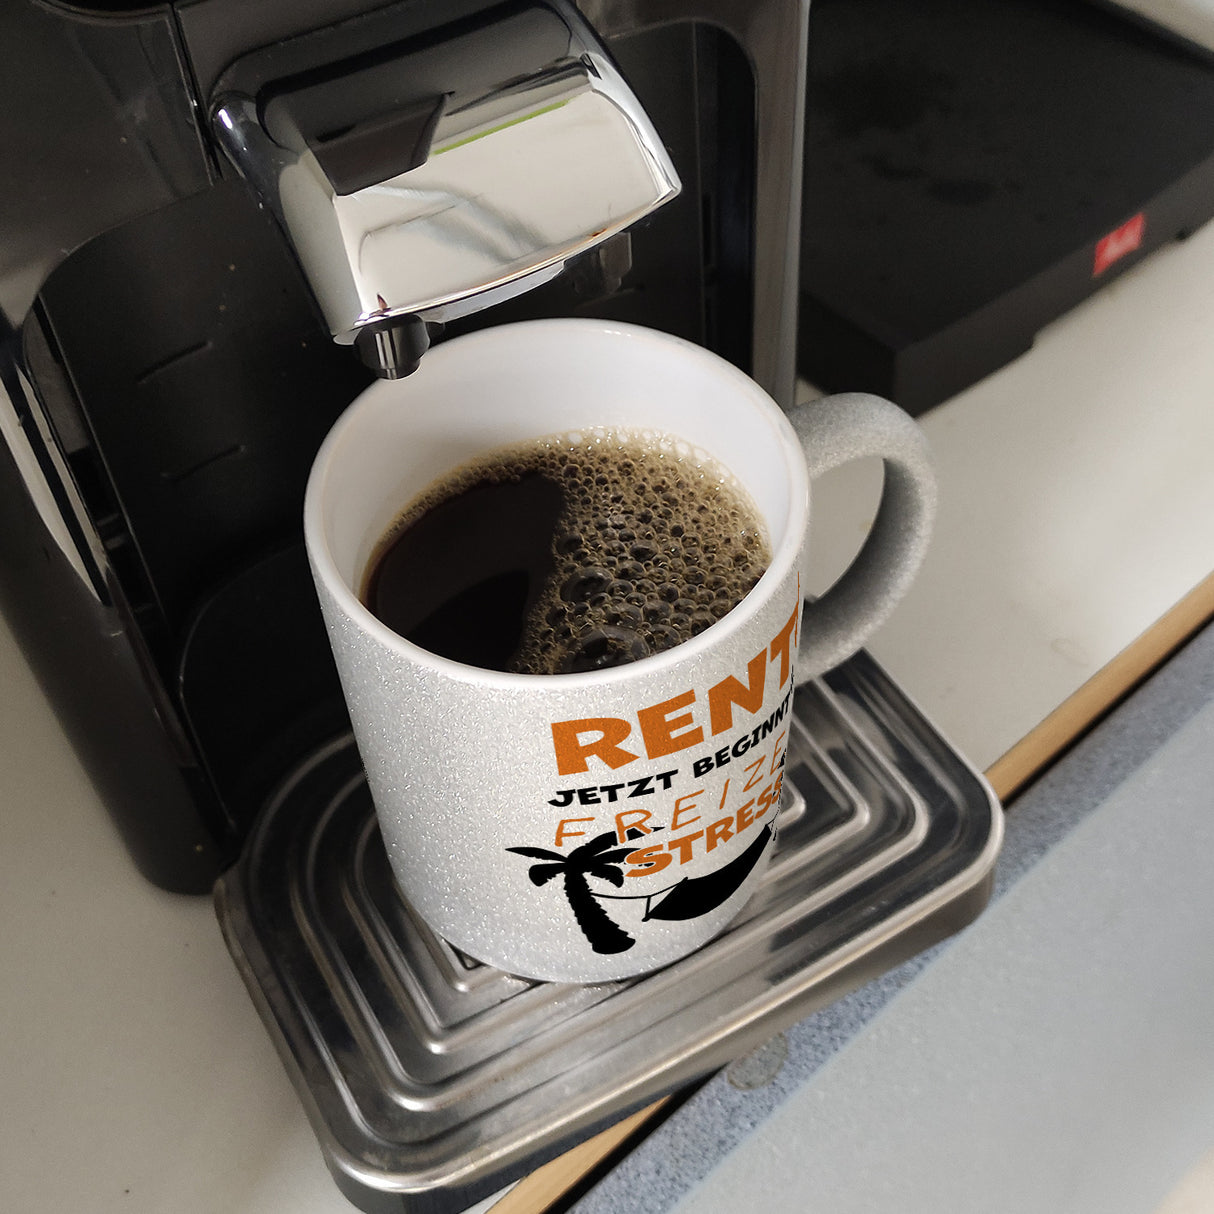 Rente - jetzt beginnt der Freizeitstress Kaffeebecher